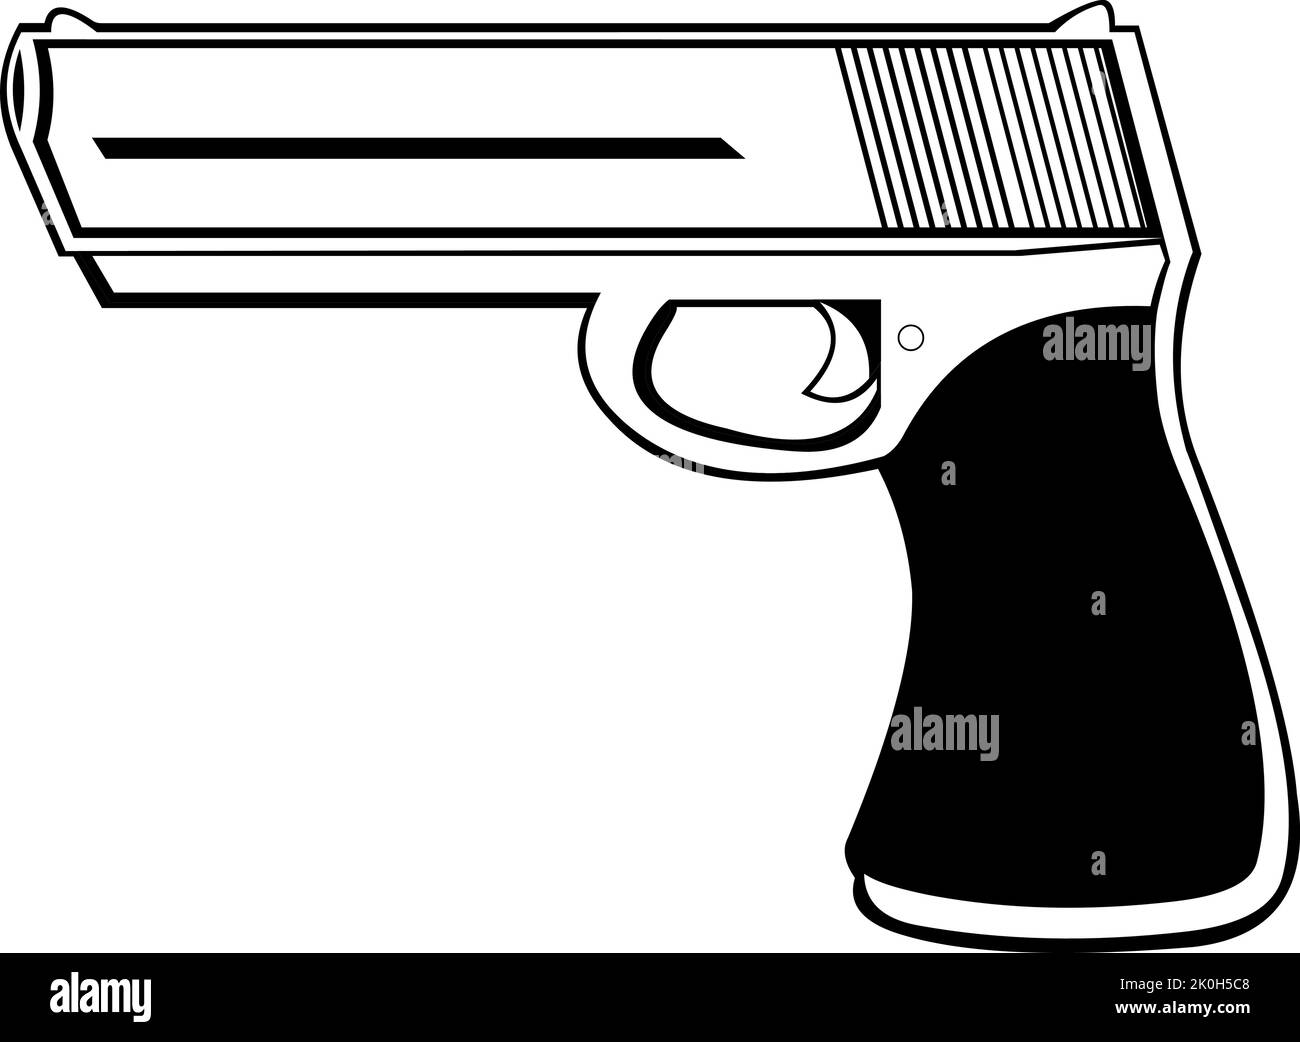 Illustration vectorielle d'une arme à feu de type pistolet, dessinée en noir et blanc Illustration de Vecteur